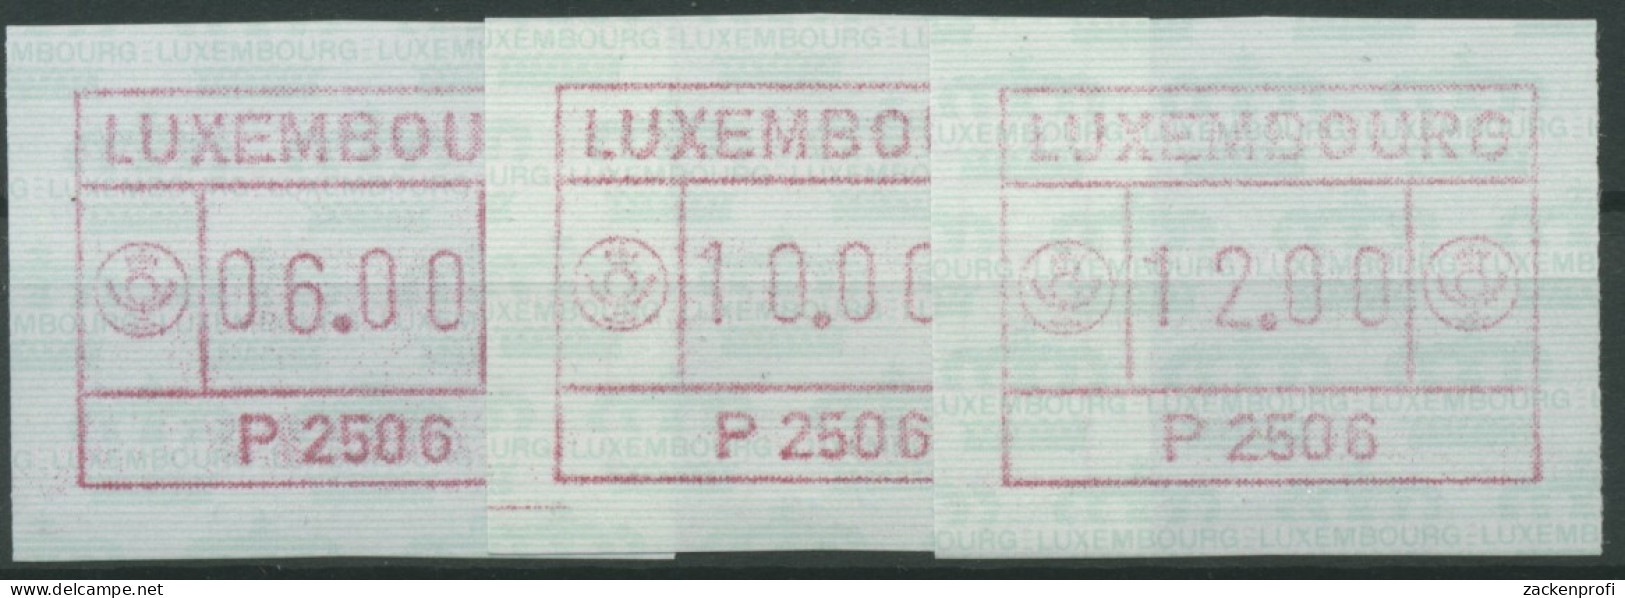 Luxemburg 1983 Automatenmarke 1 Satz 3 Werte Automat P2506 Postfrisch - Vignettes D'affranchissement